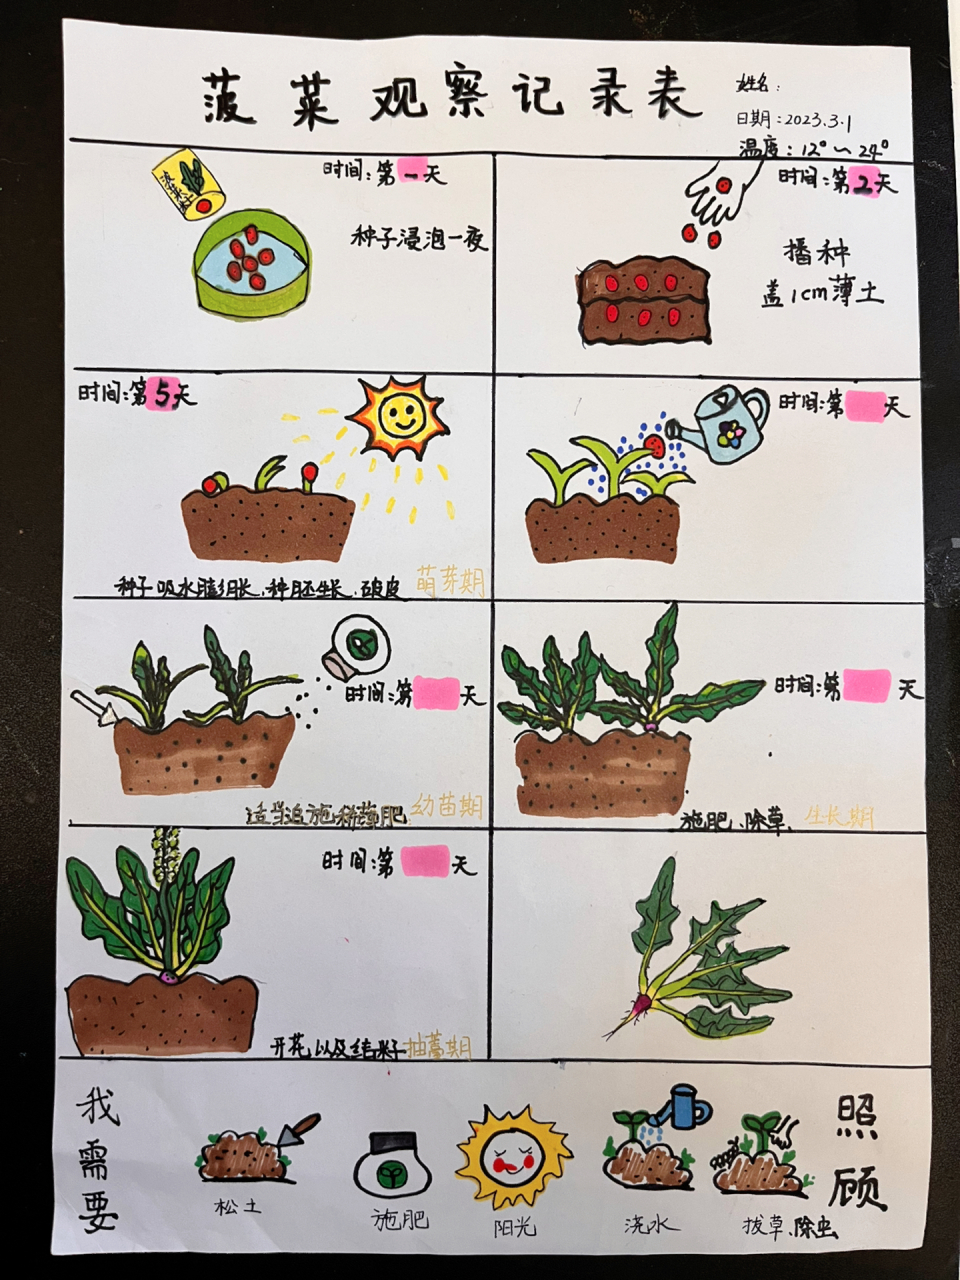 幼儿园,小学植物角,菠菜植物生长观察记录        一,菠菜生长过程 1